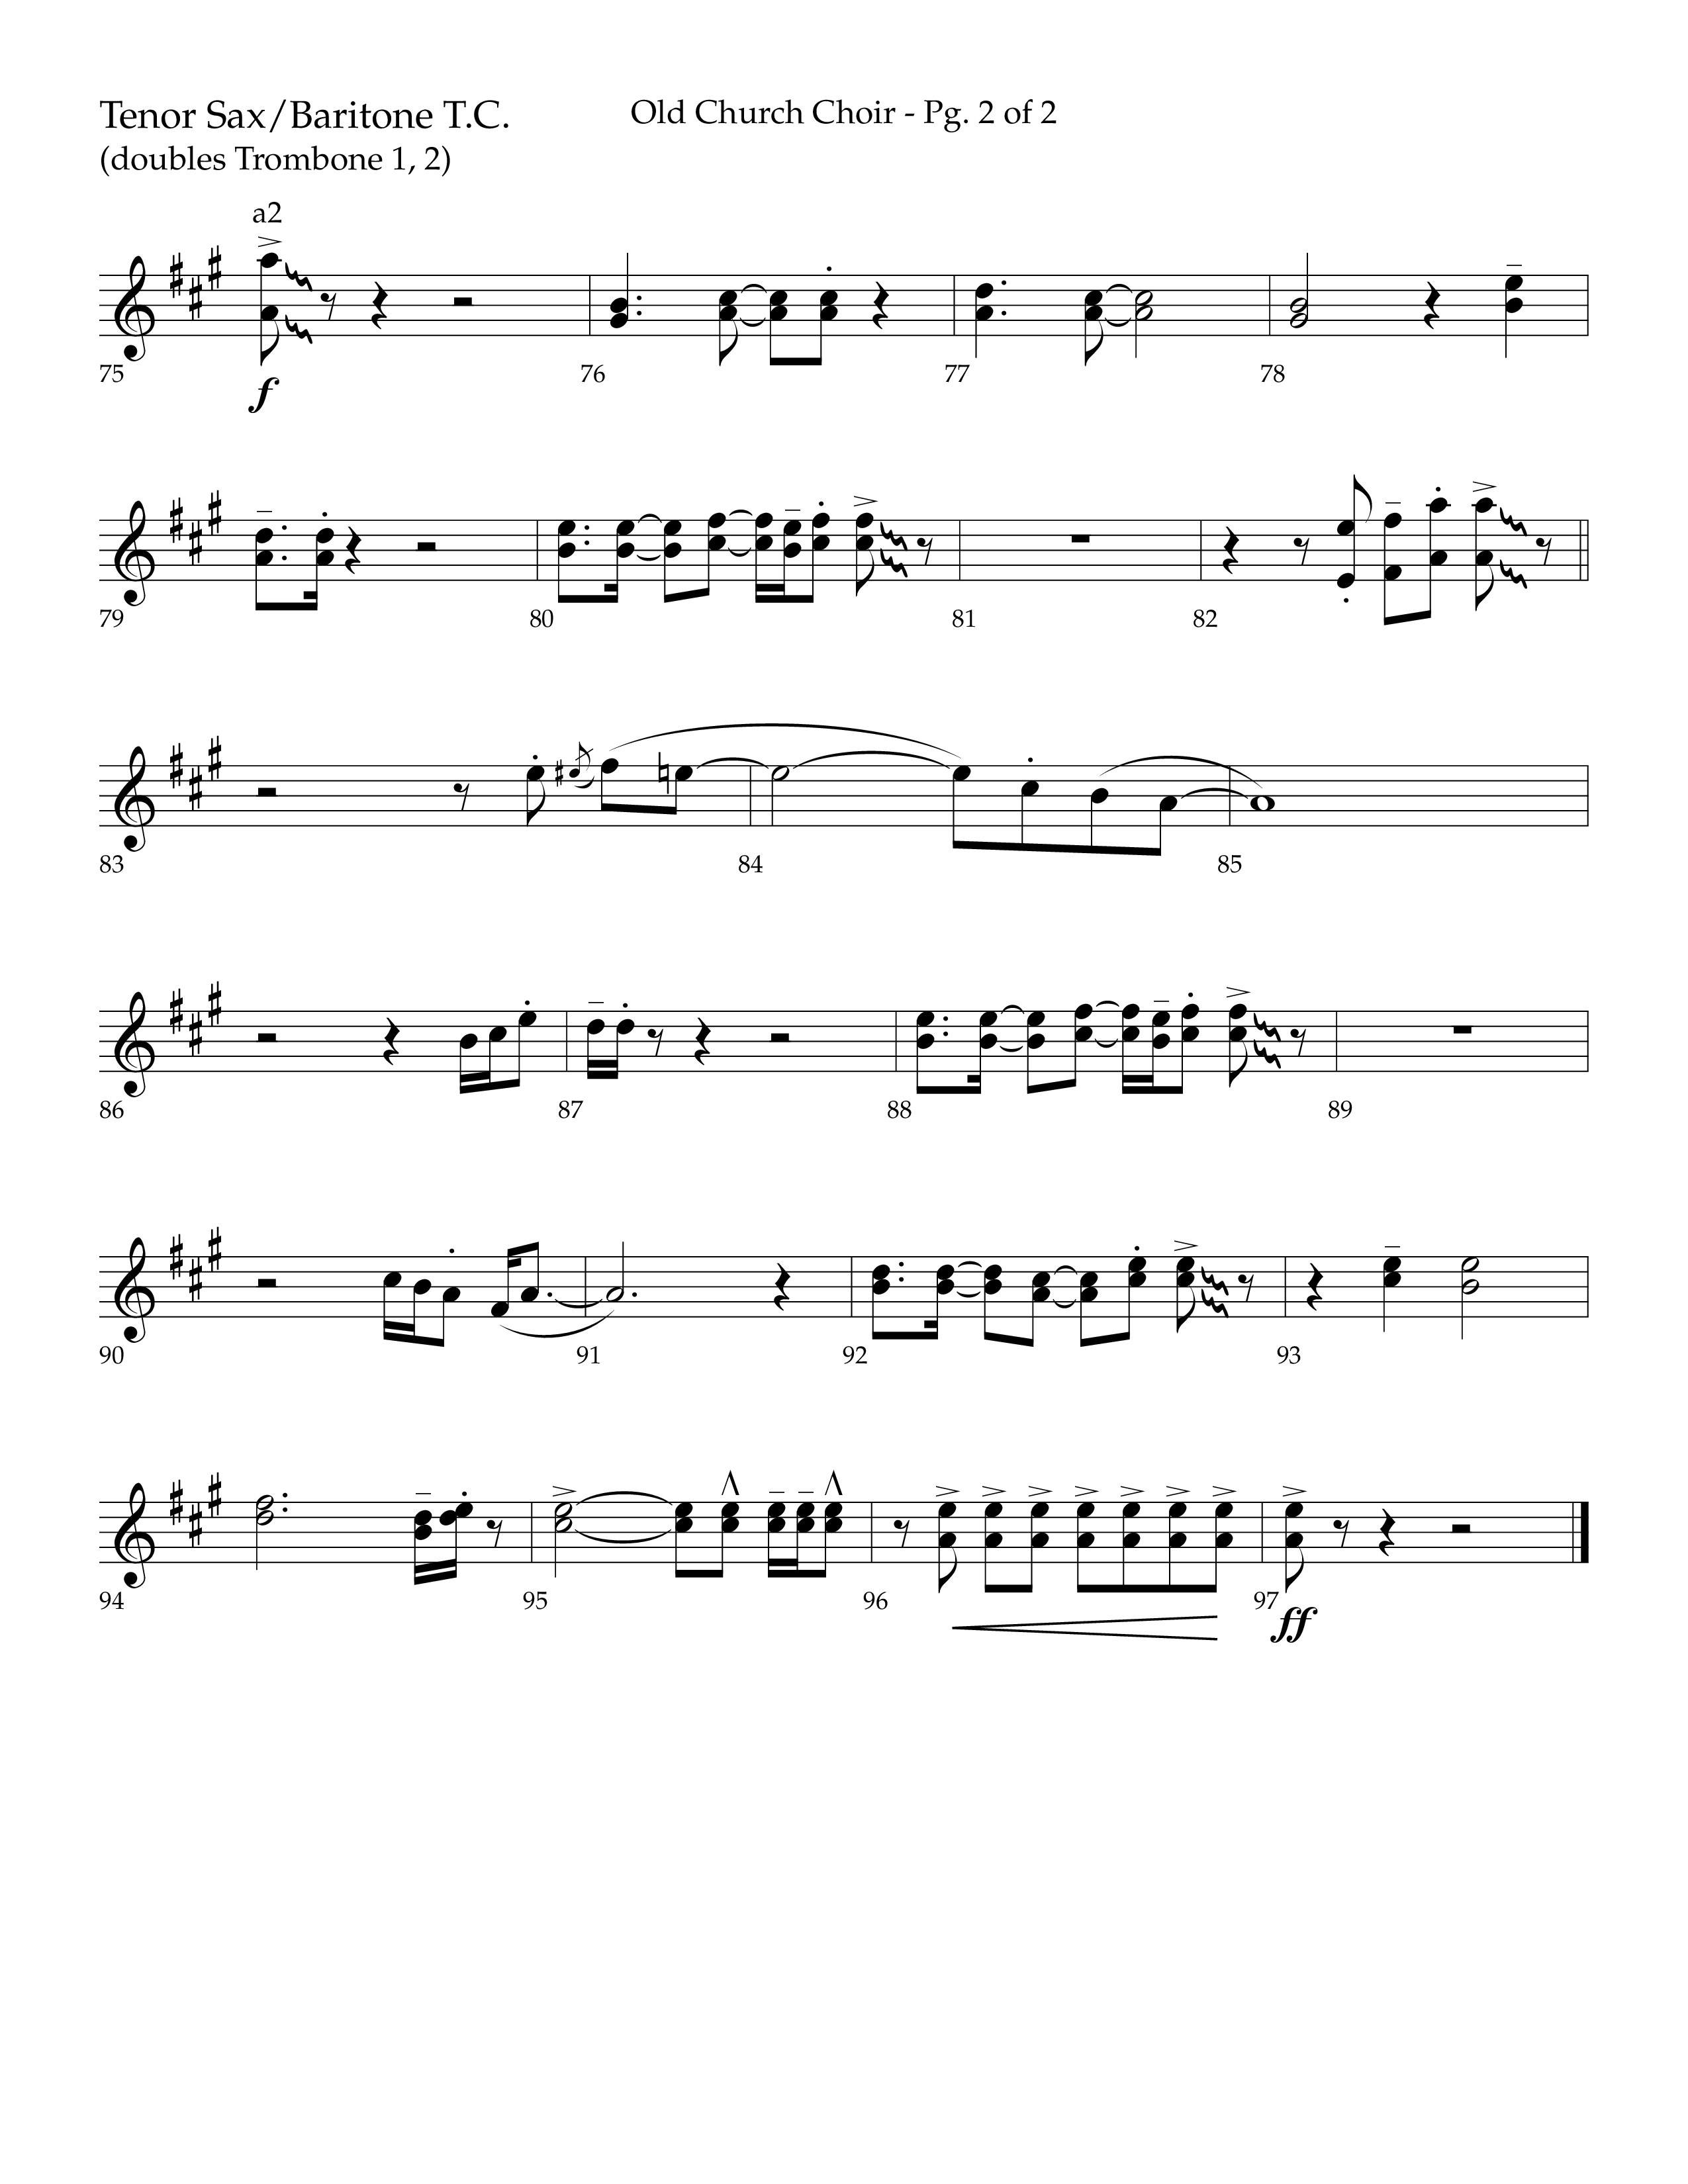 Old Church Choir (Choral Anthem SATB) Tenor Sax/Baritone T.C. (Lifeway Choral / Arr. Ken Barker / Arr. Craig Adams / Arr. Danny Zaloudik)